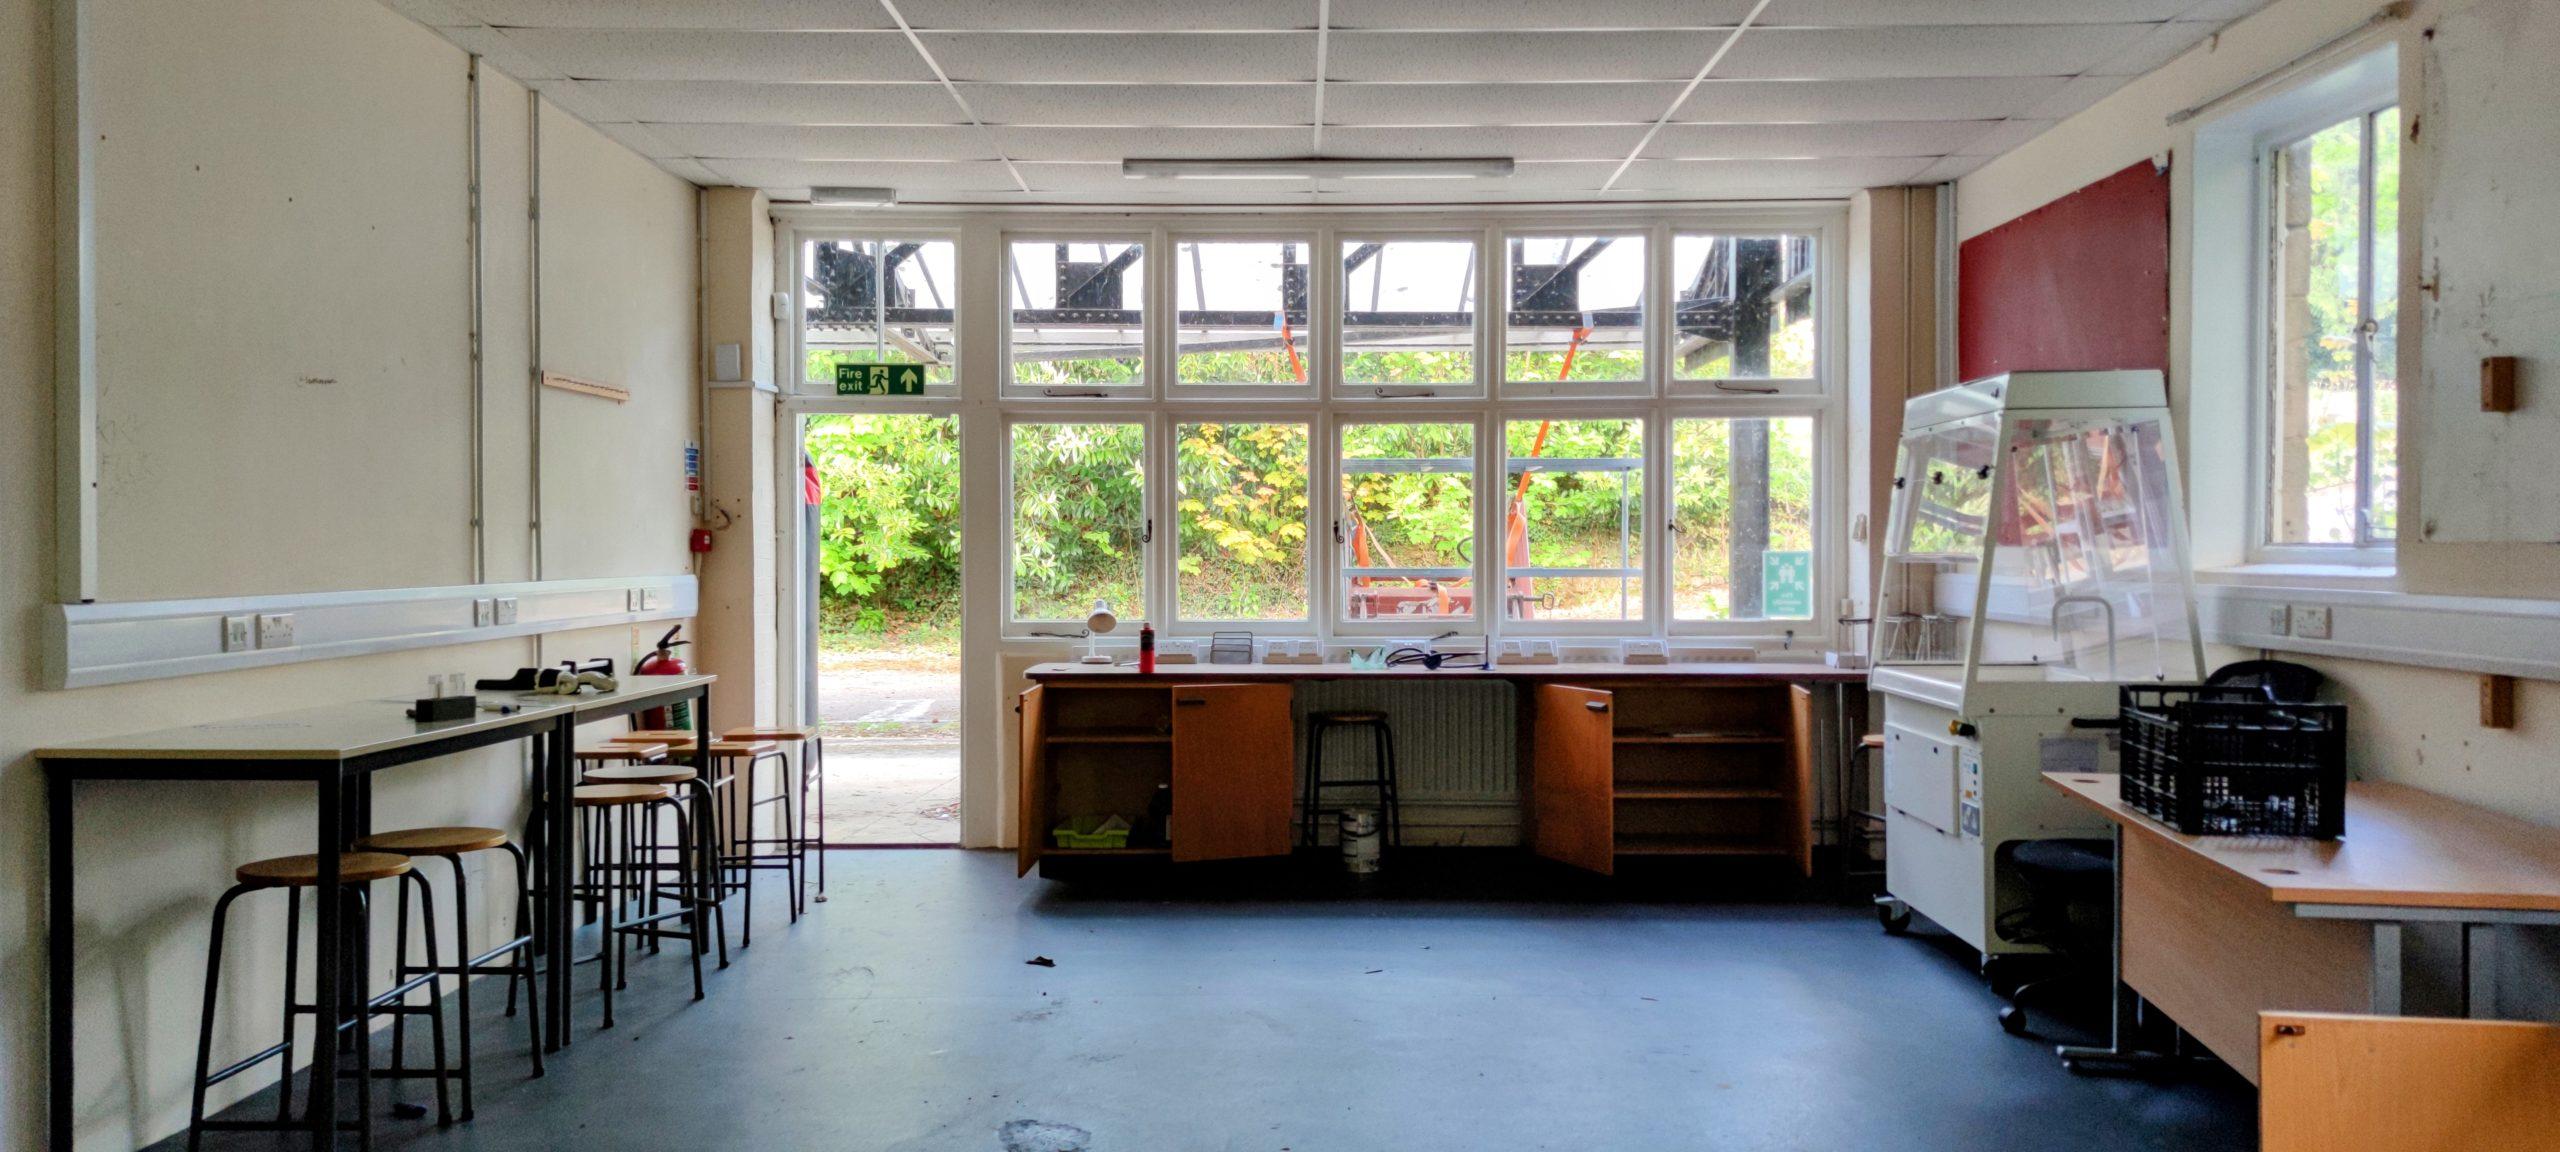 Abandoned Boarding School